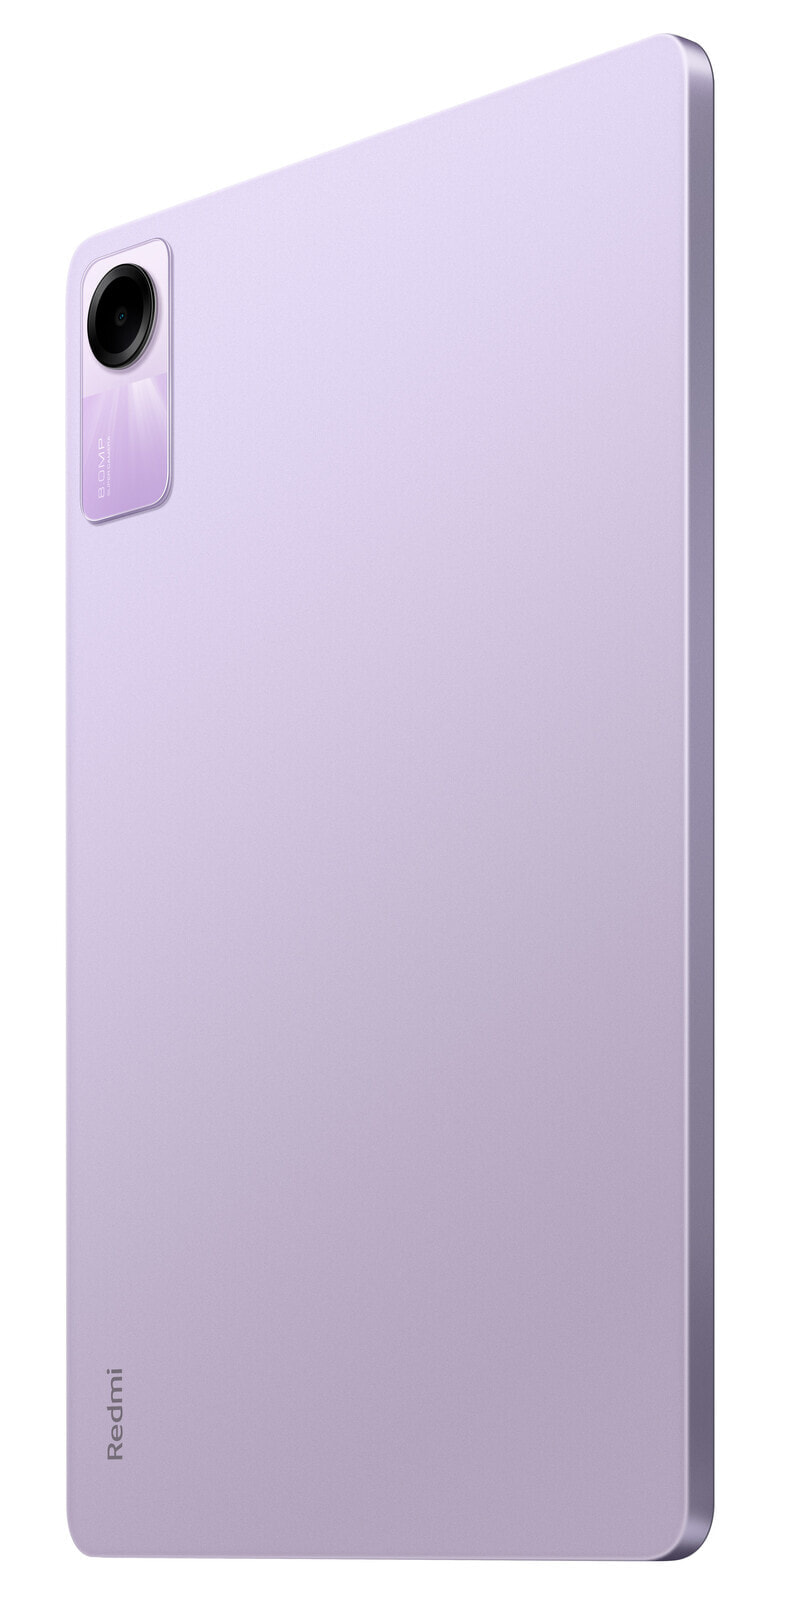 Redmi Pad SE 4GB - 128GB WiFi - lavender purple - Cellphone